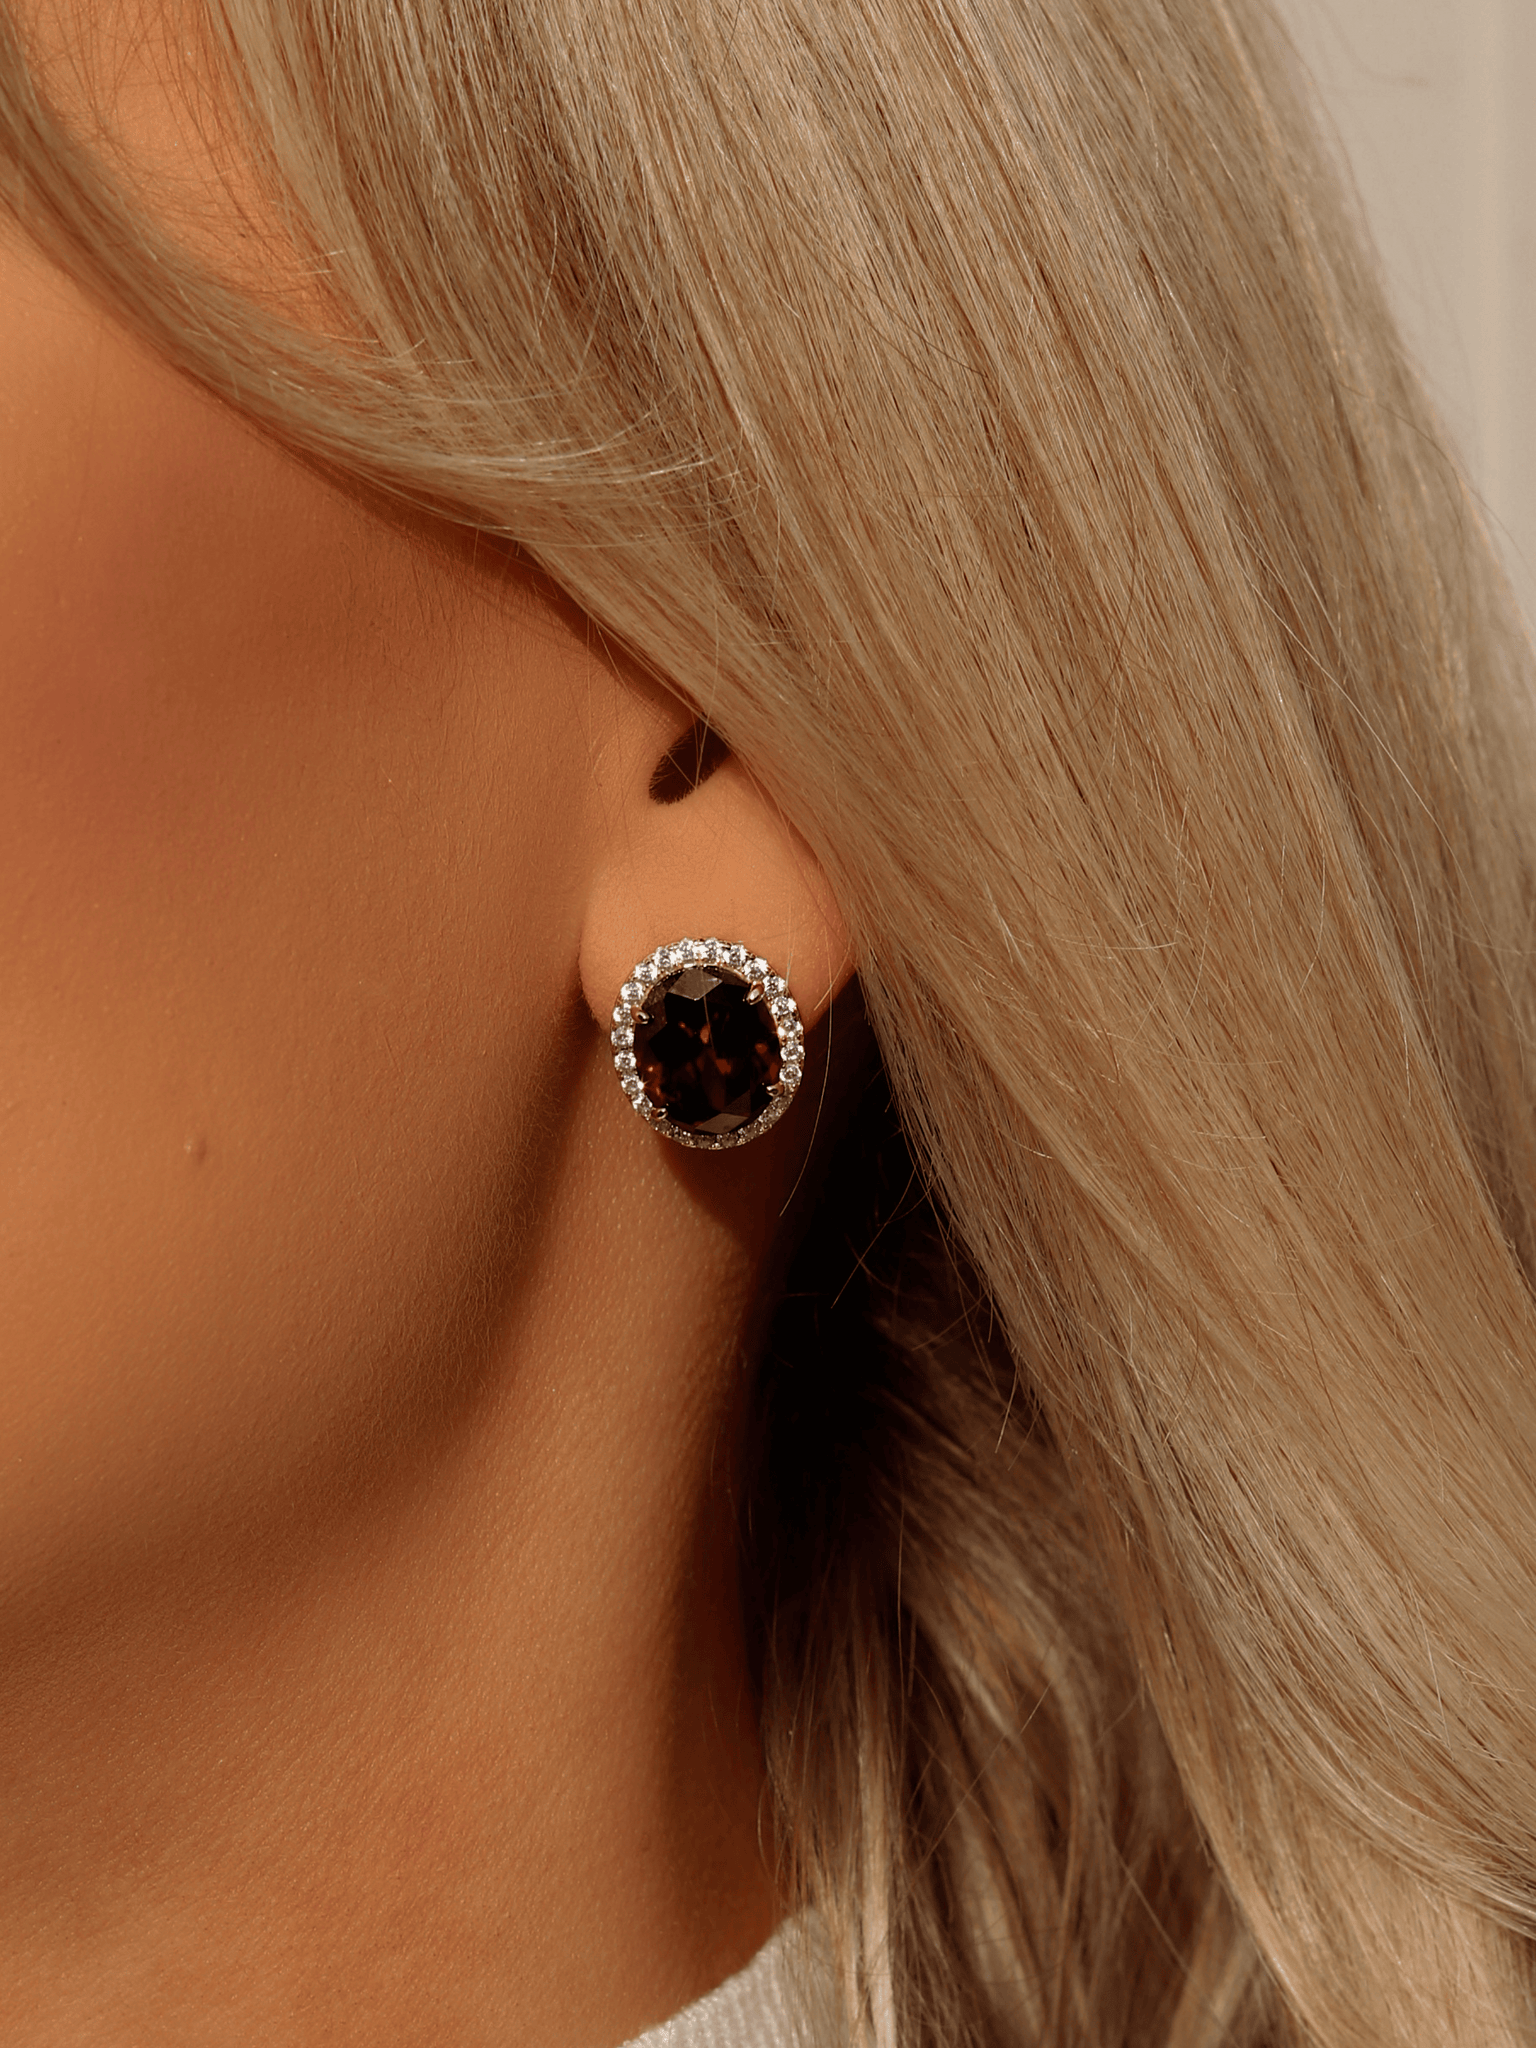 Belle Earrings - Garnet